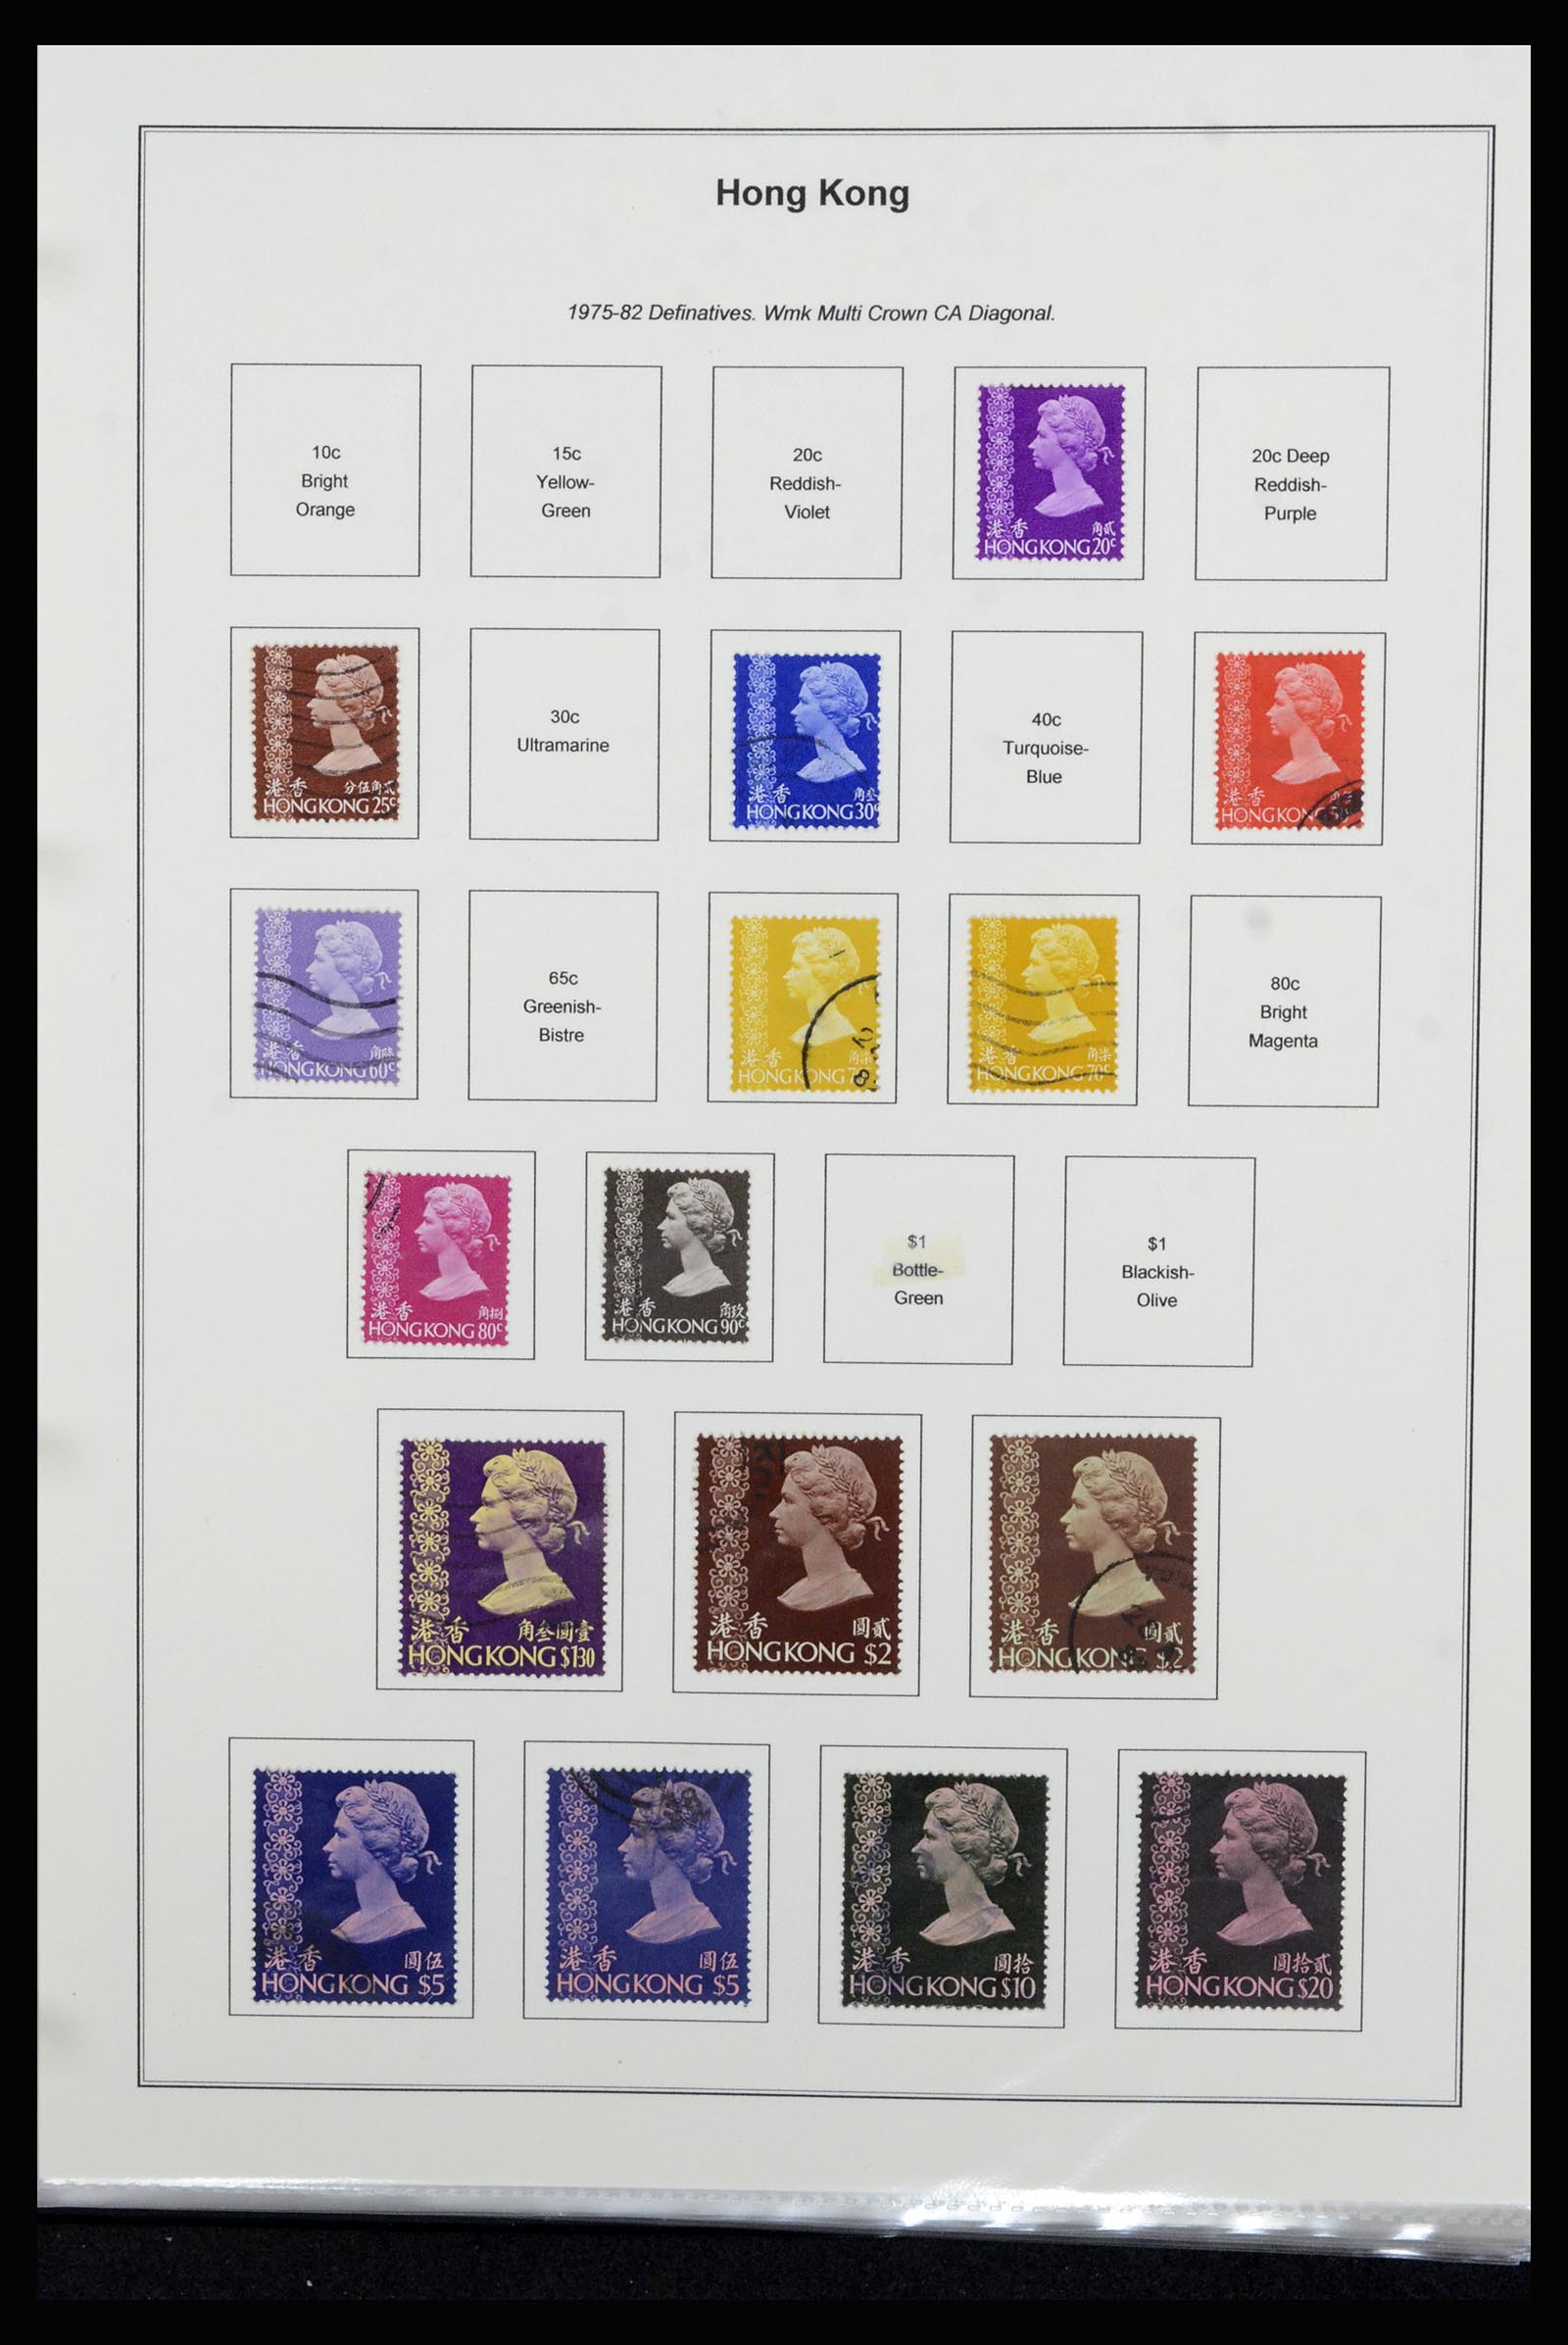 37079 034 - Stamp collection 37079 Hong Kong 1961-1984.